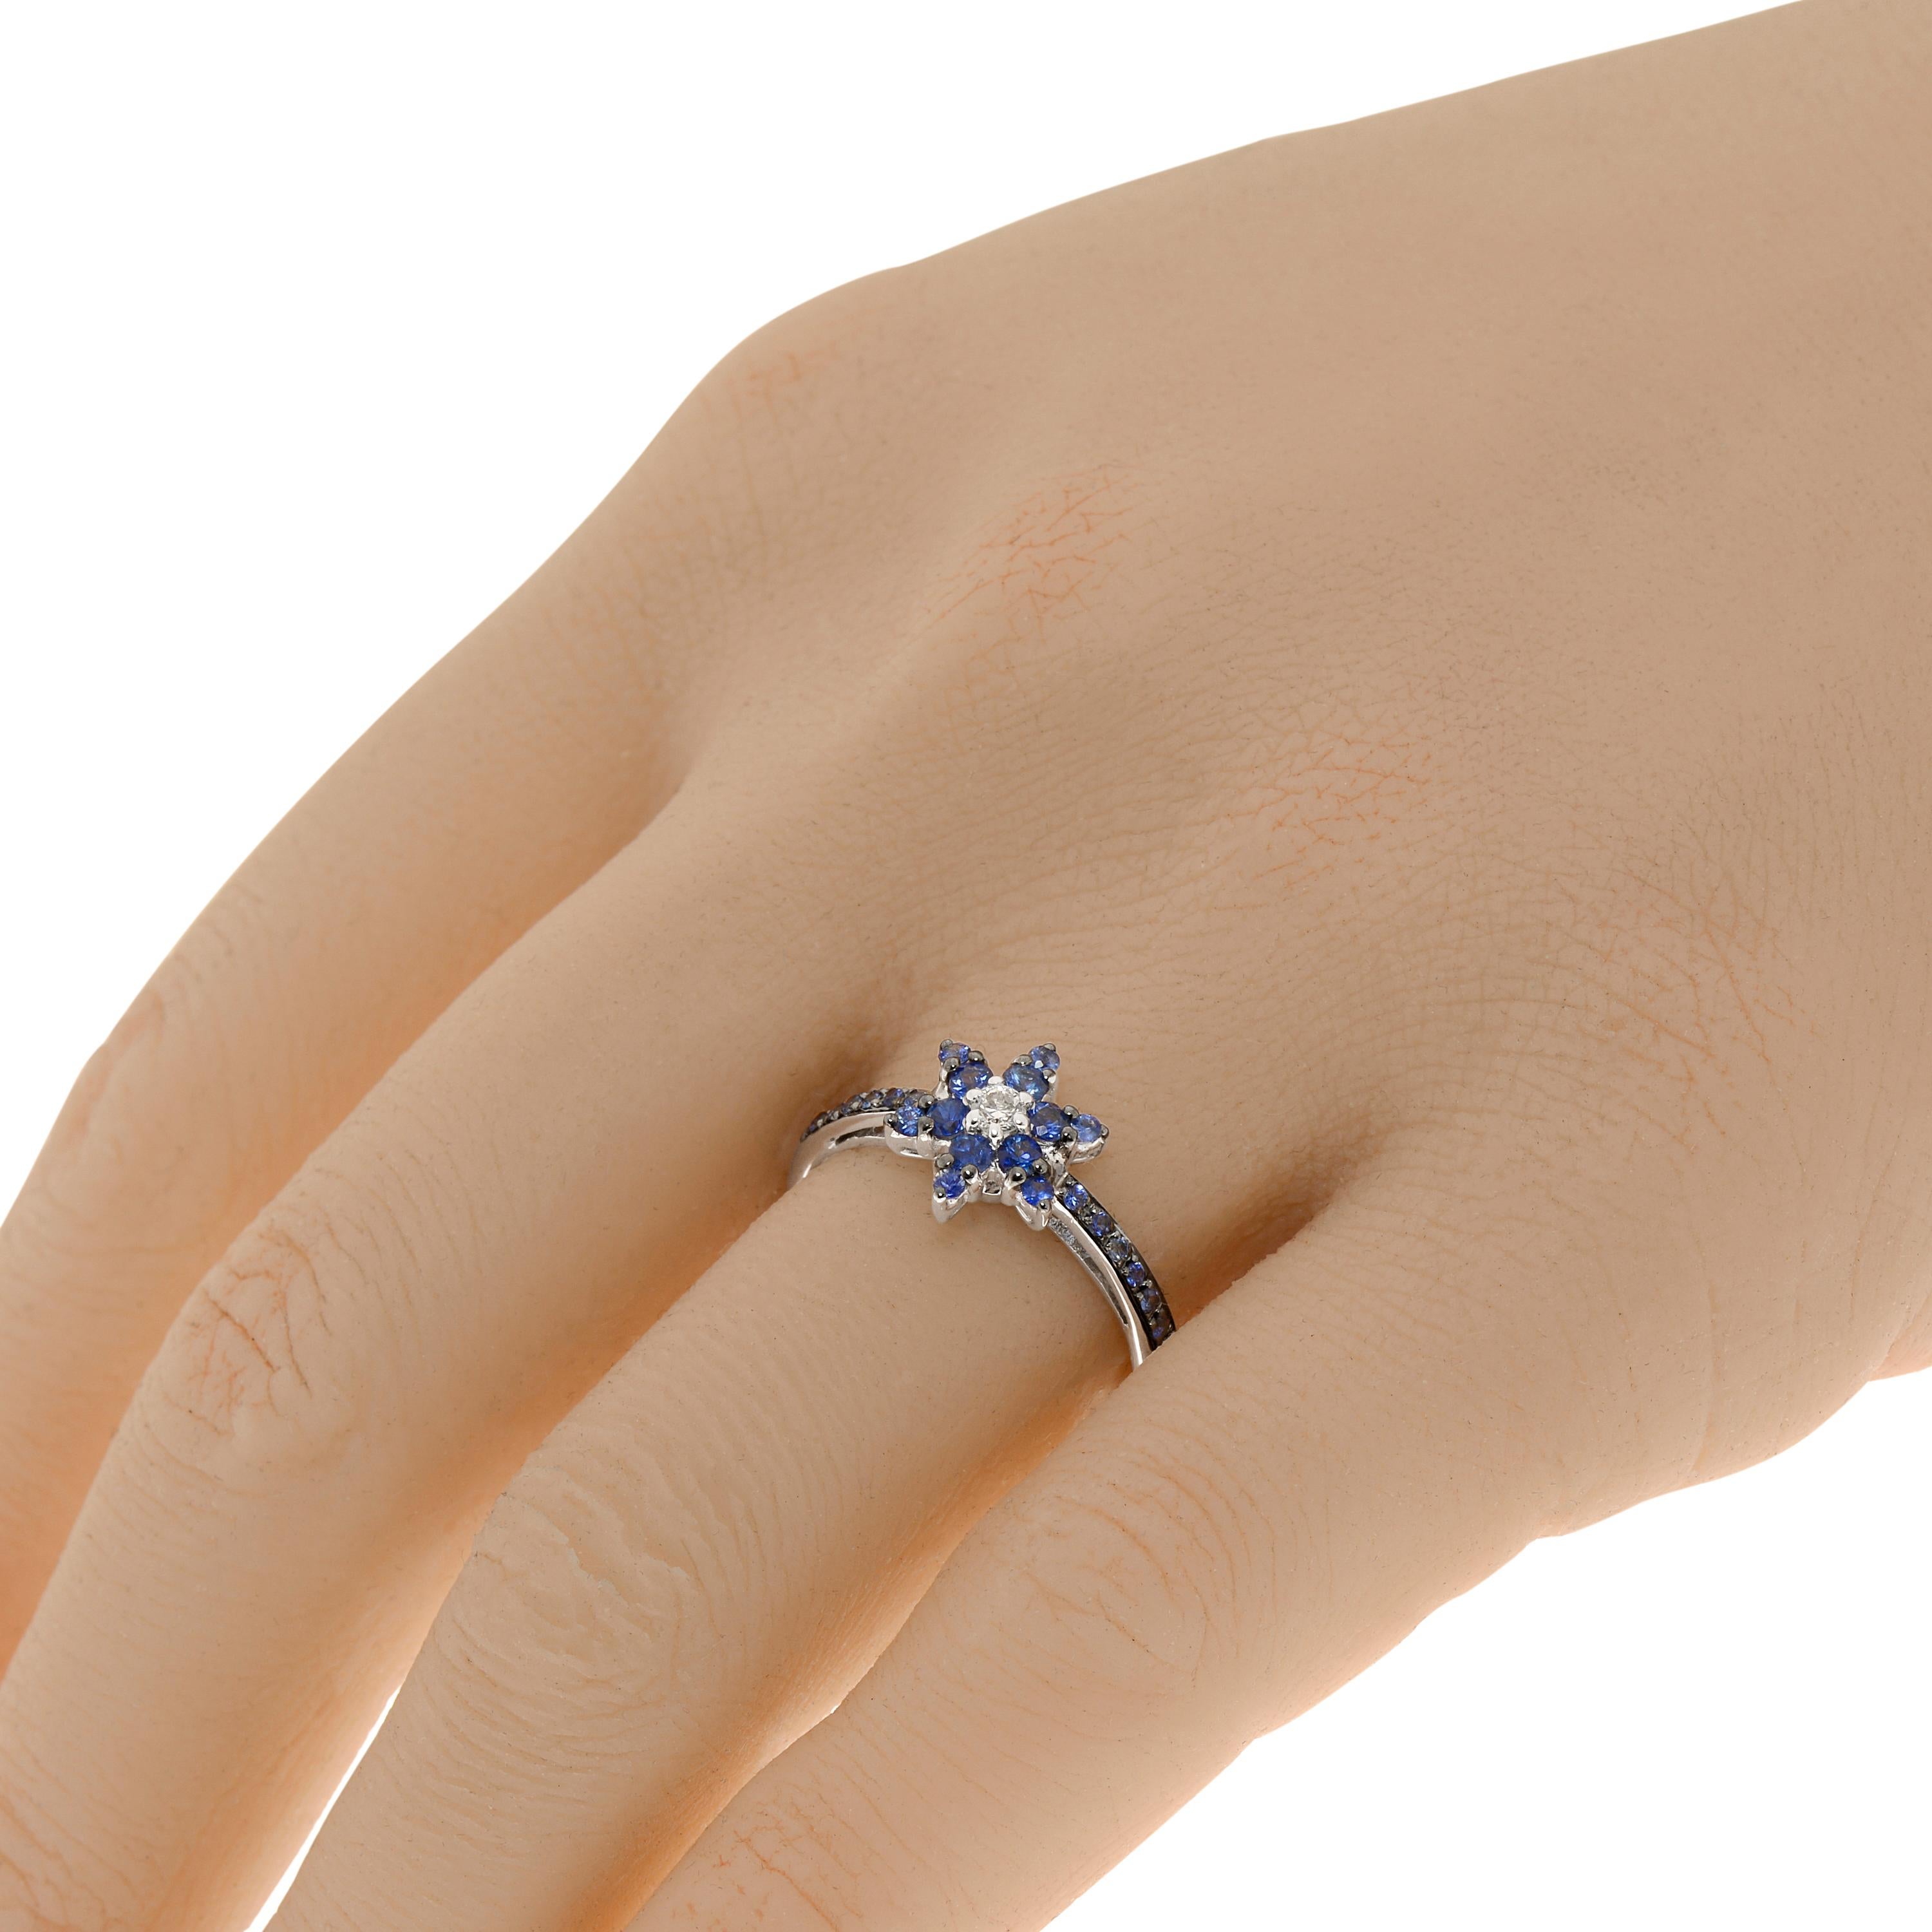 ZYDO 18K Weißgold Band Ring verfügt über eine Blume mit 0,42ct. tw. blauen Saphir Edelsteinen und 0,05ct. tw. Diamanten Akzente gruppiert. Die Ringgröße ist 7 (54,4). Die Dekoration ist 3/8